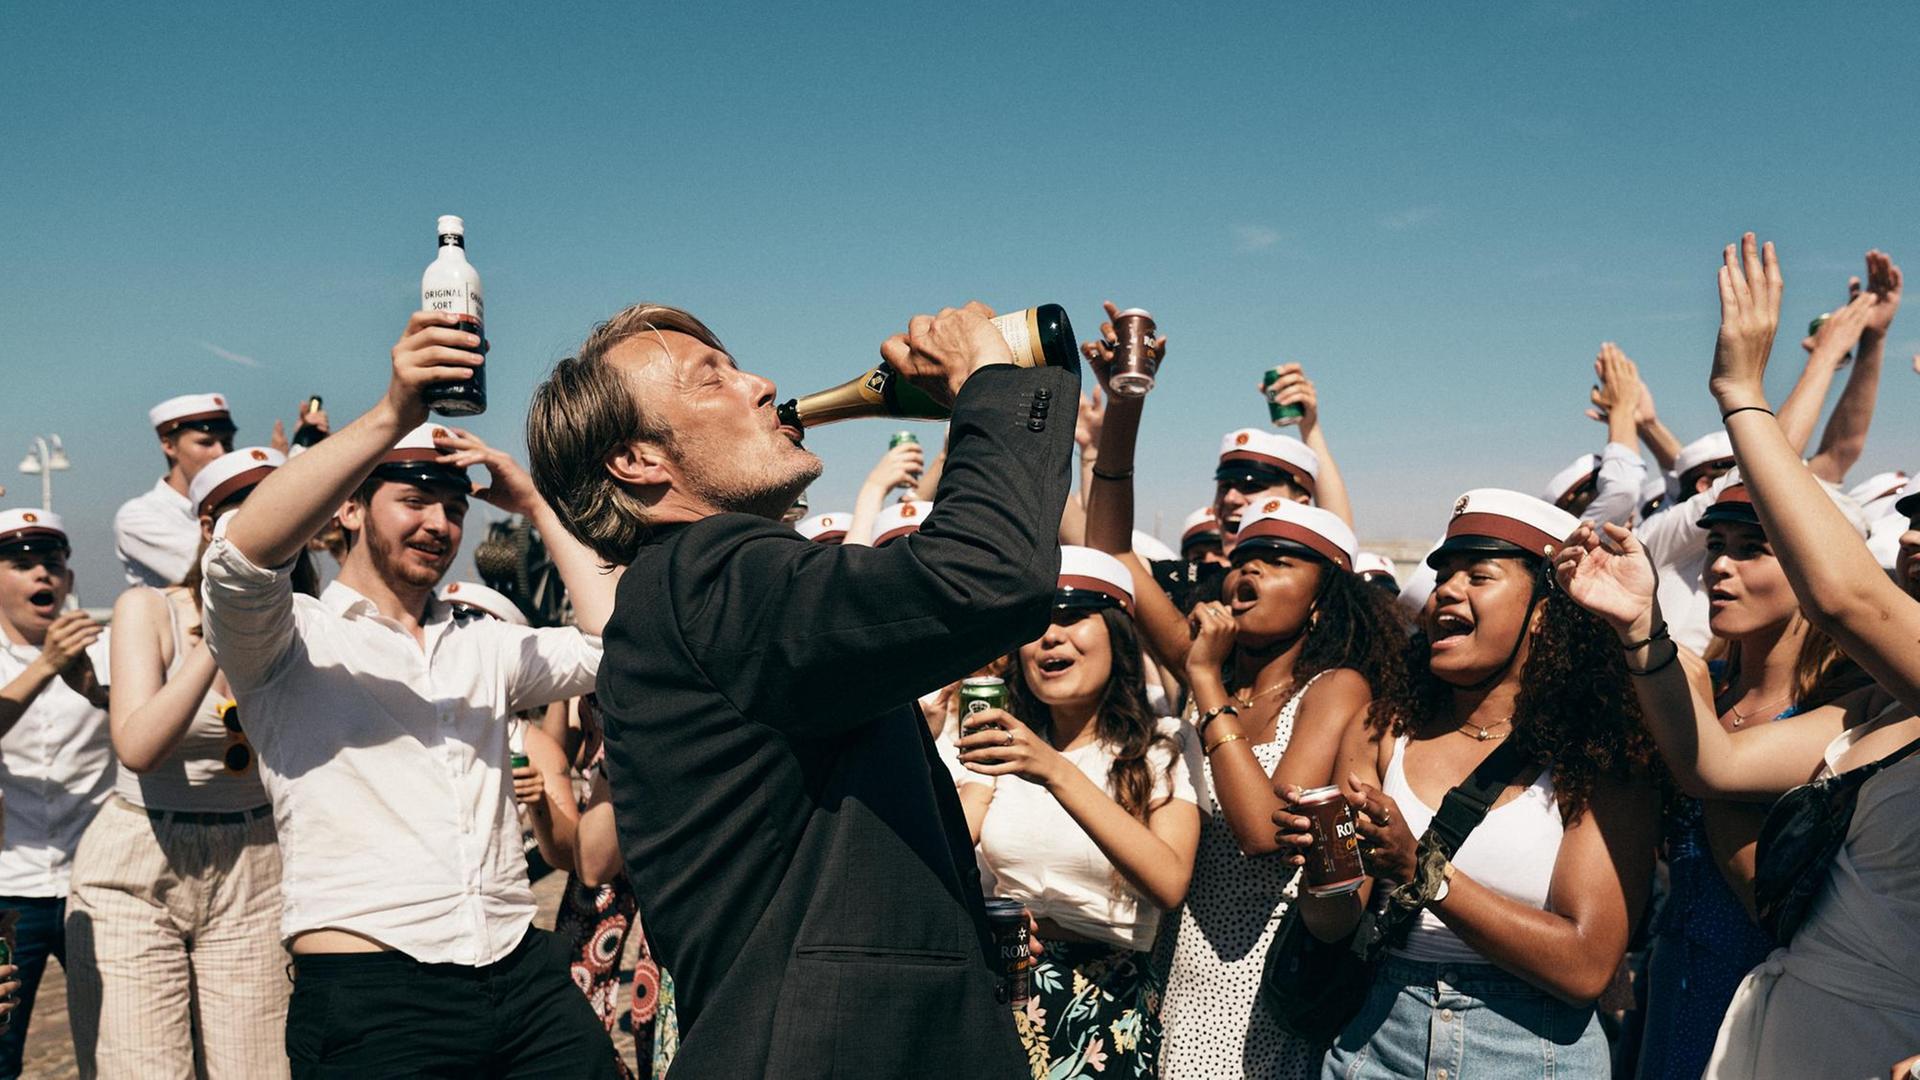 Der Schauspieler Mads Mikkelsen in einem Szenenfoto von Thomas Vinterbergs Film "Der Rausch". Mikkelsen trinkt aus einer Champagnerflasche.